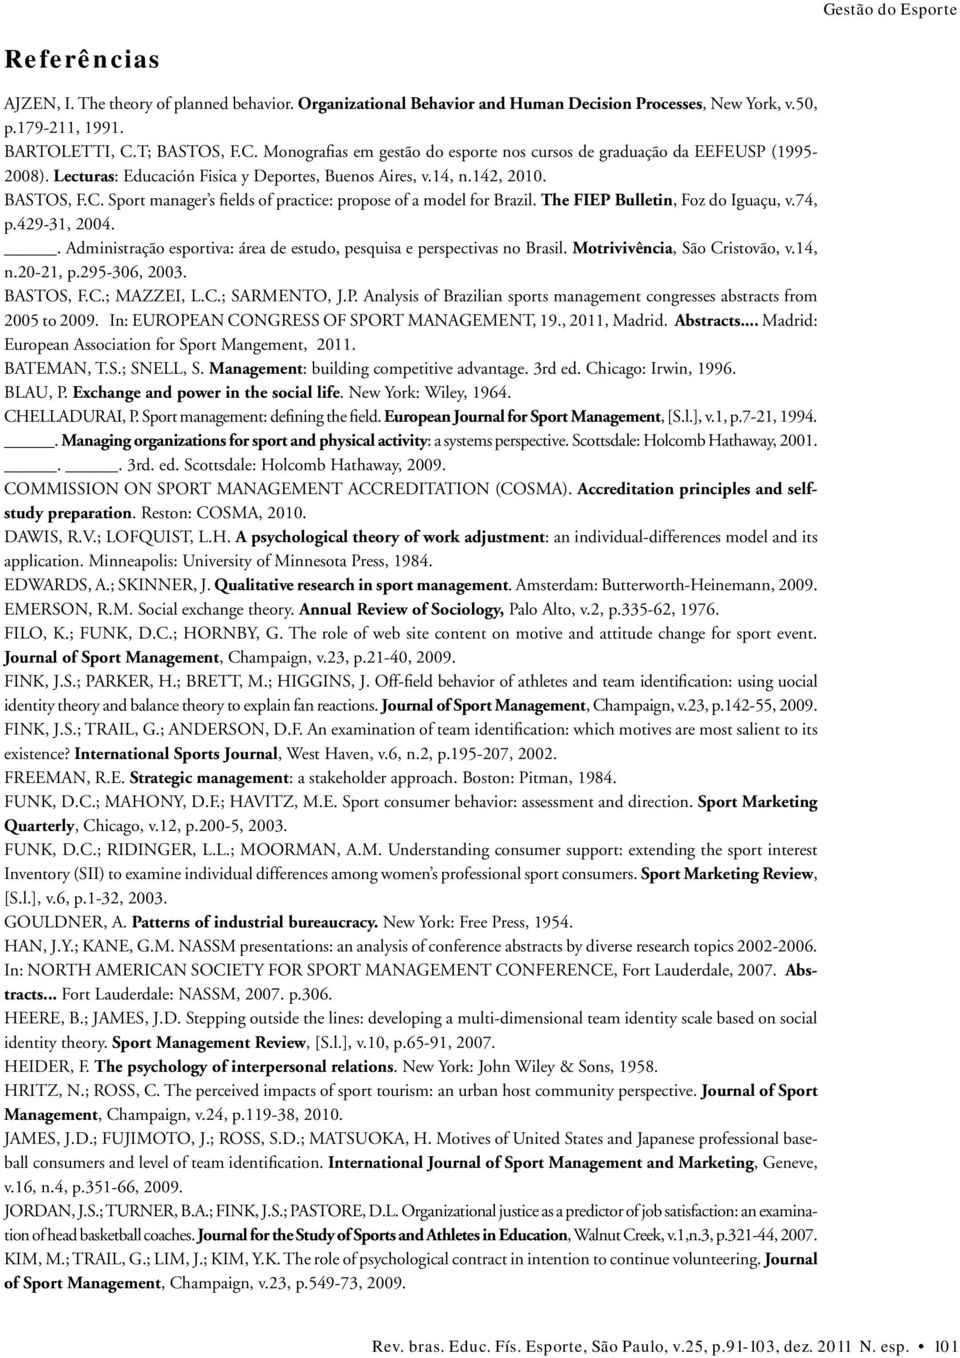 The FIEP Bulletin, Foz do Iguaçu, v.74, p.429-31, 2004.. Administração esportiva: área de estudo, pesquisa e perspectivas no Brasil. Motrivivência, São Cristovão, v.14, n.20-21, p.295-306, 2003.